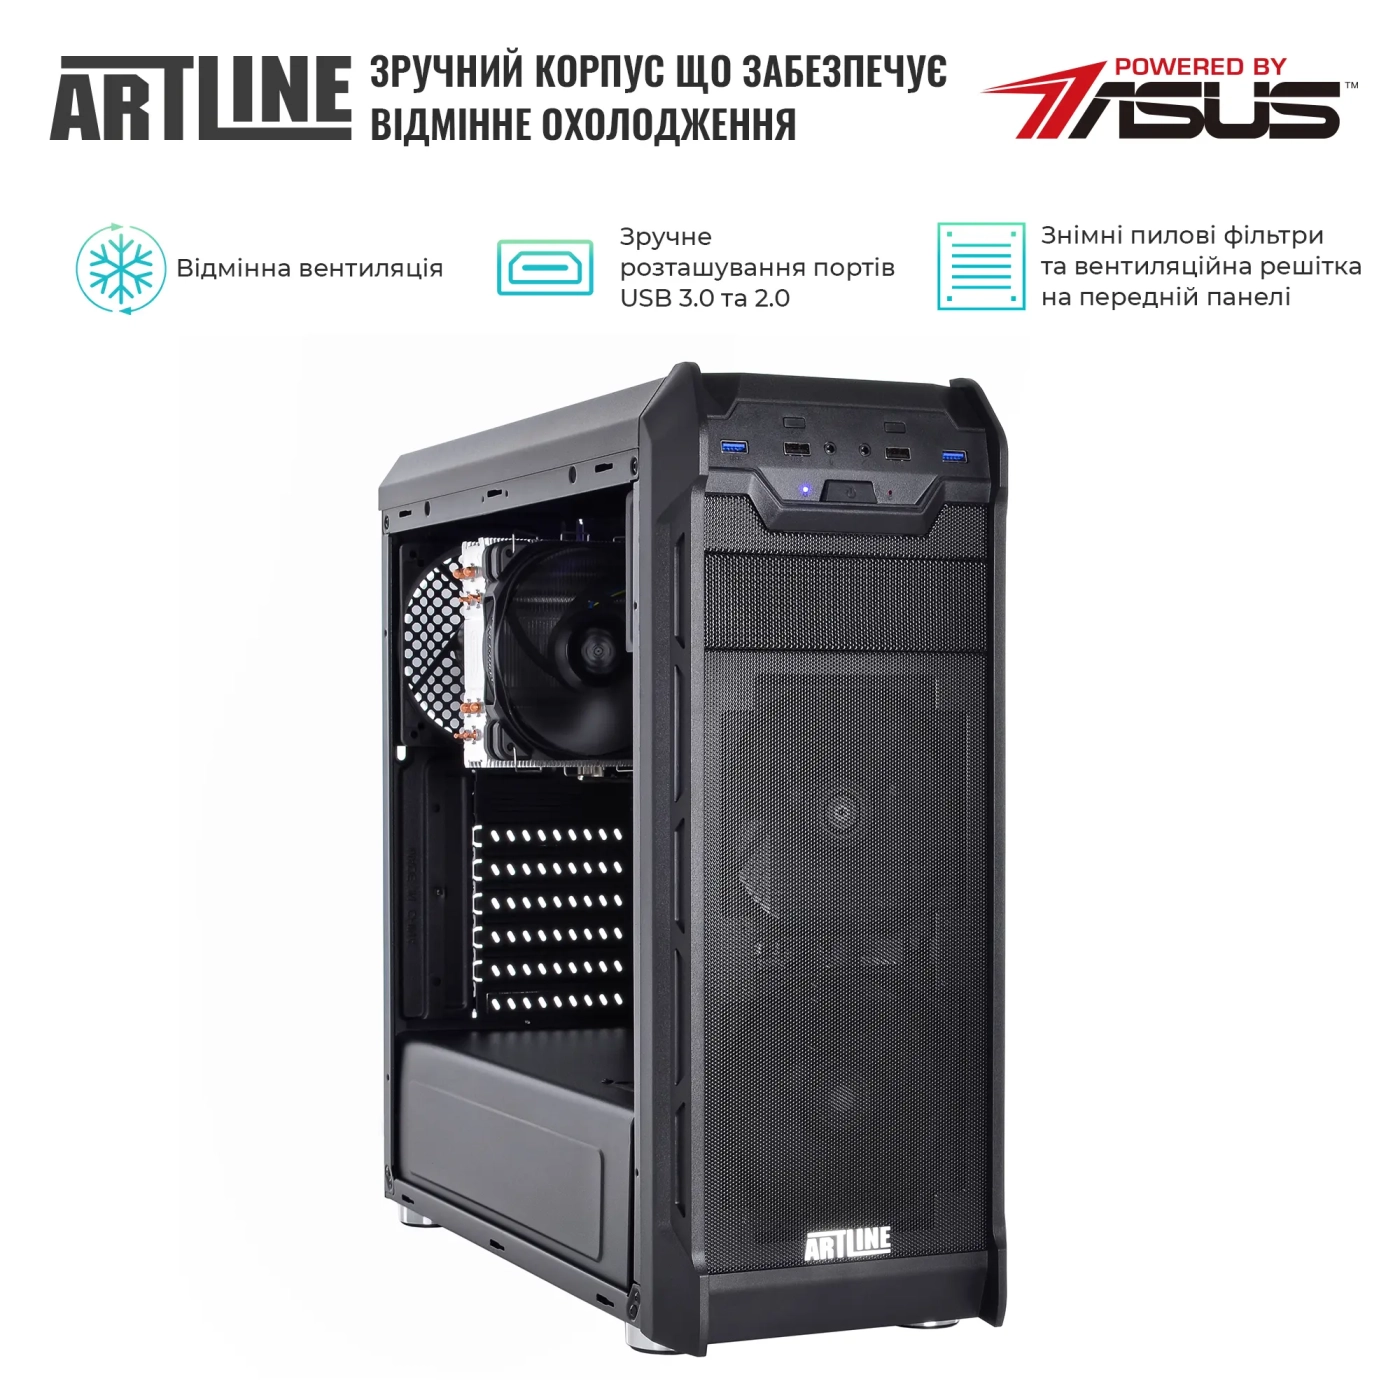 Купить Сервер ARTLINE Business T27 (T27v37) - фото 3